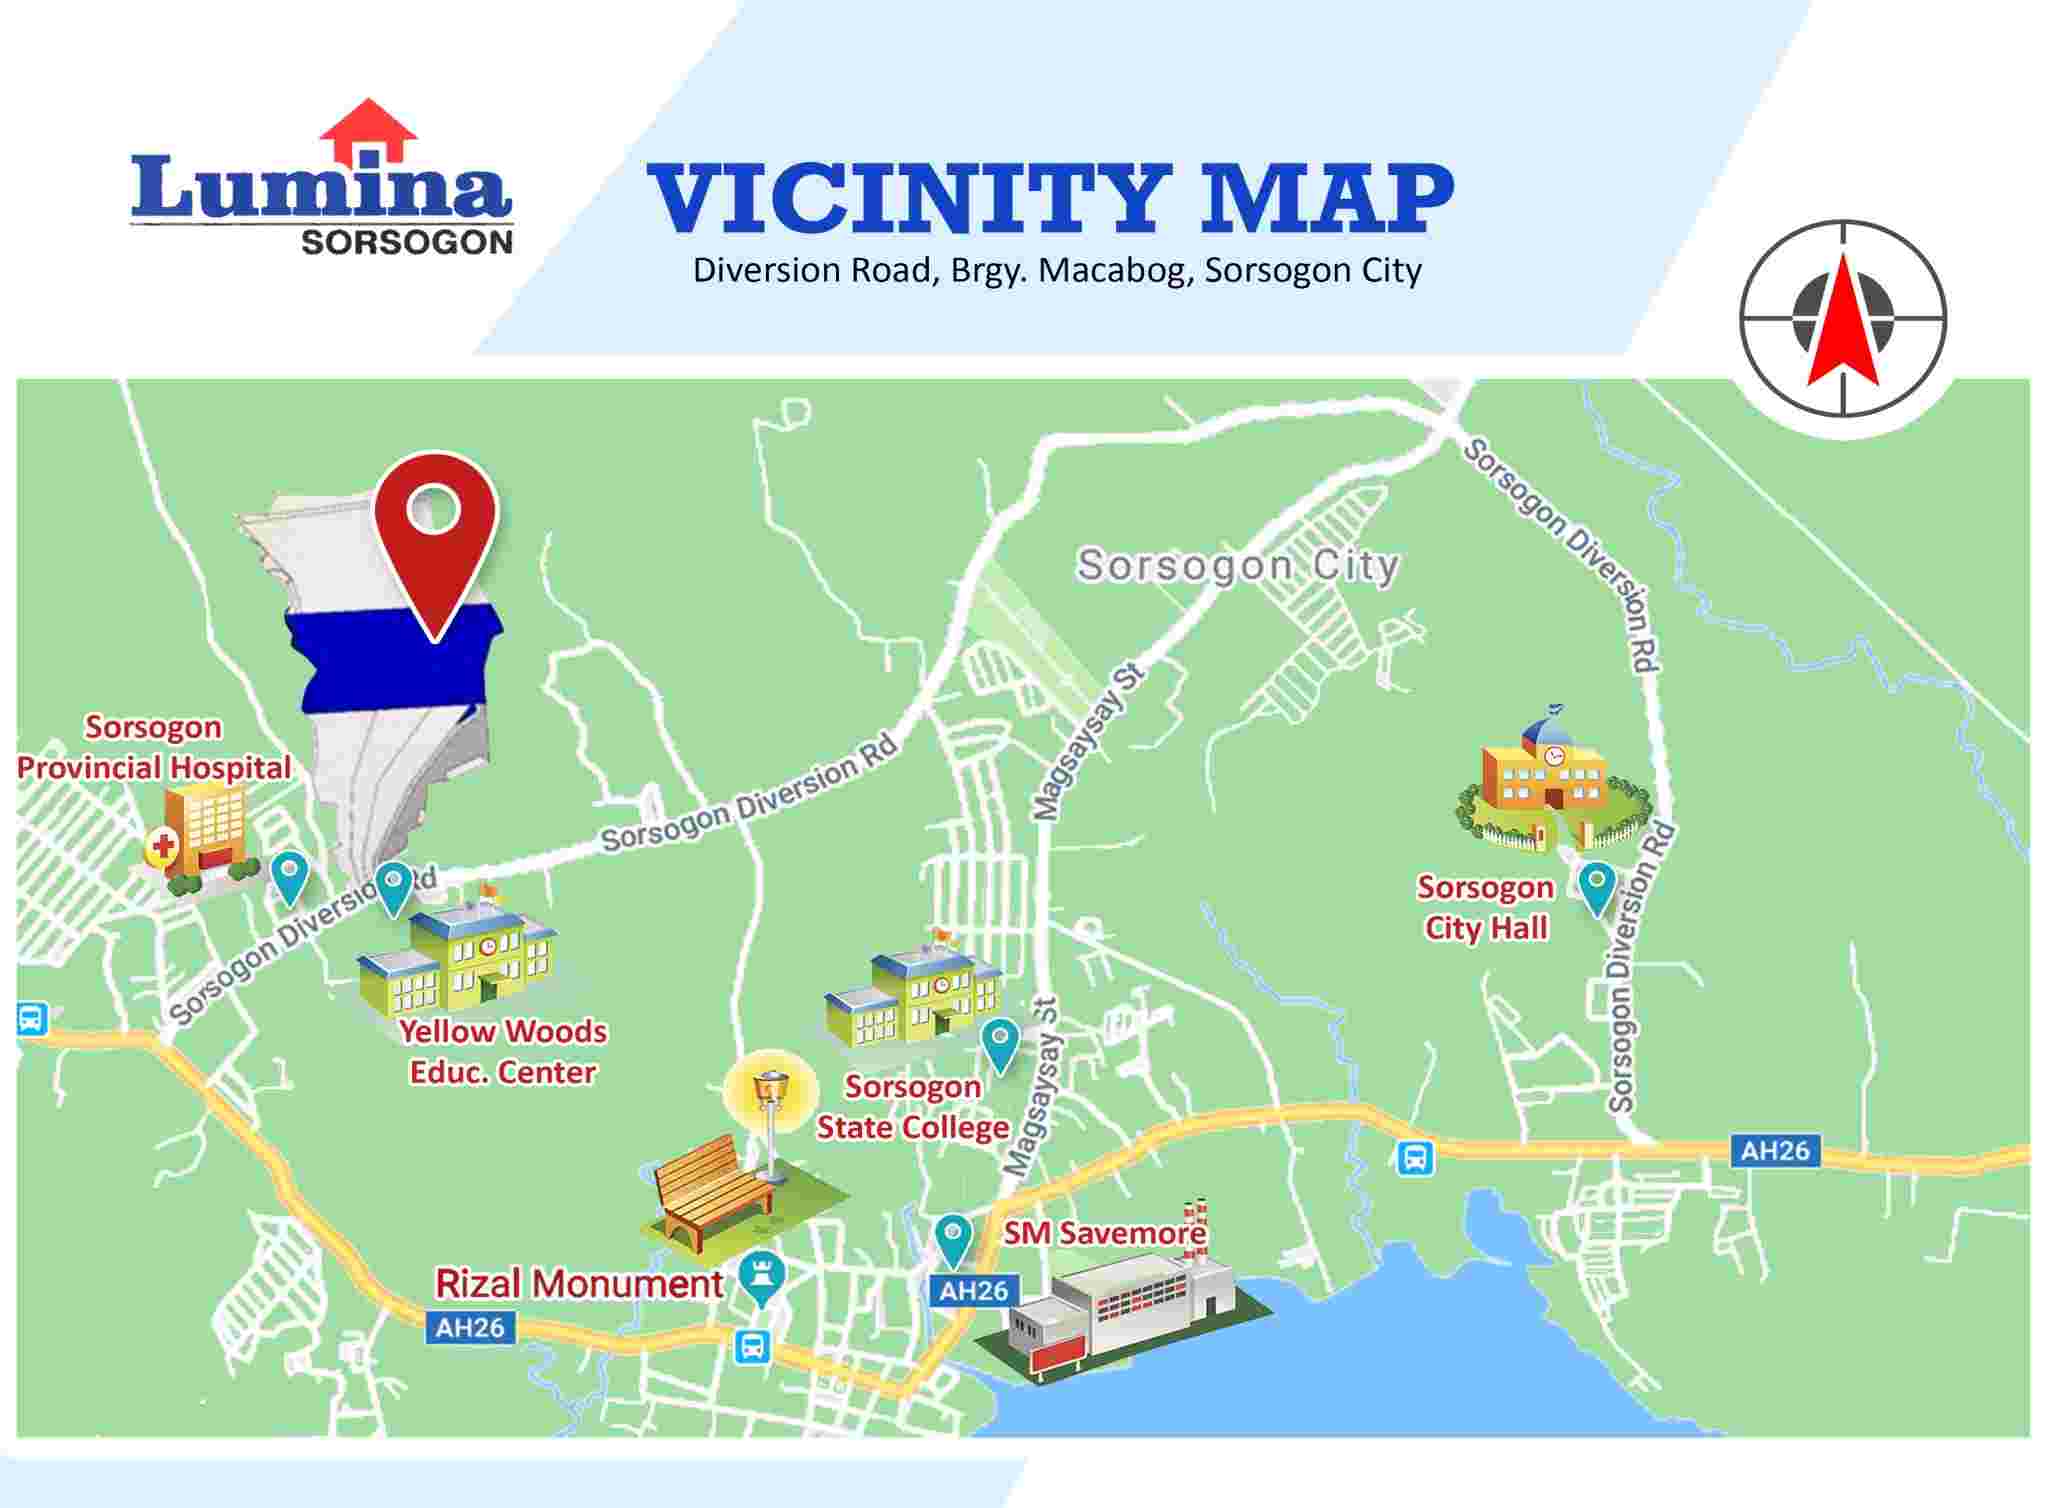 Vicinity-Map-1660023357.jpeg